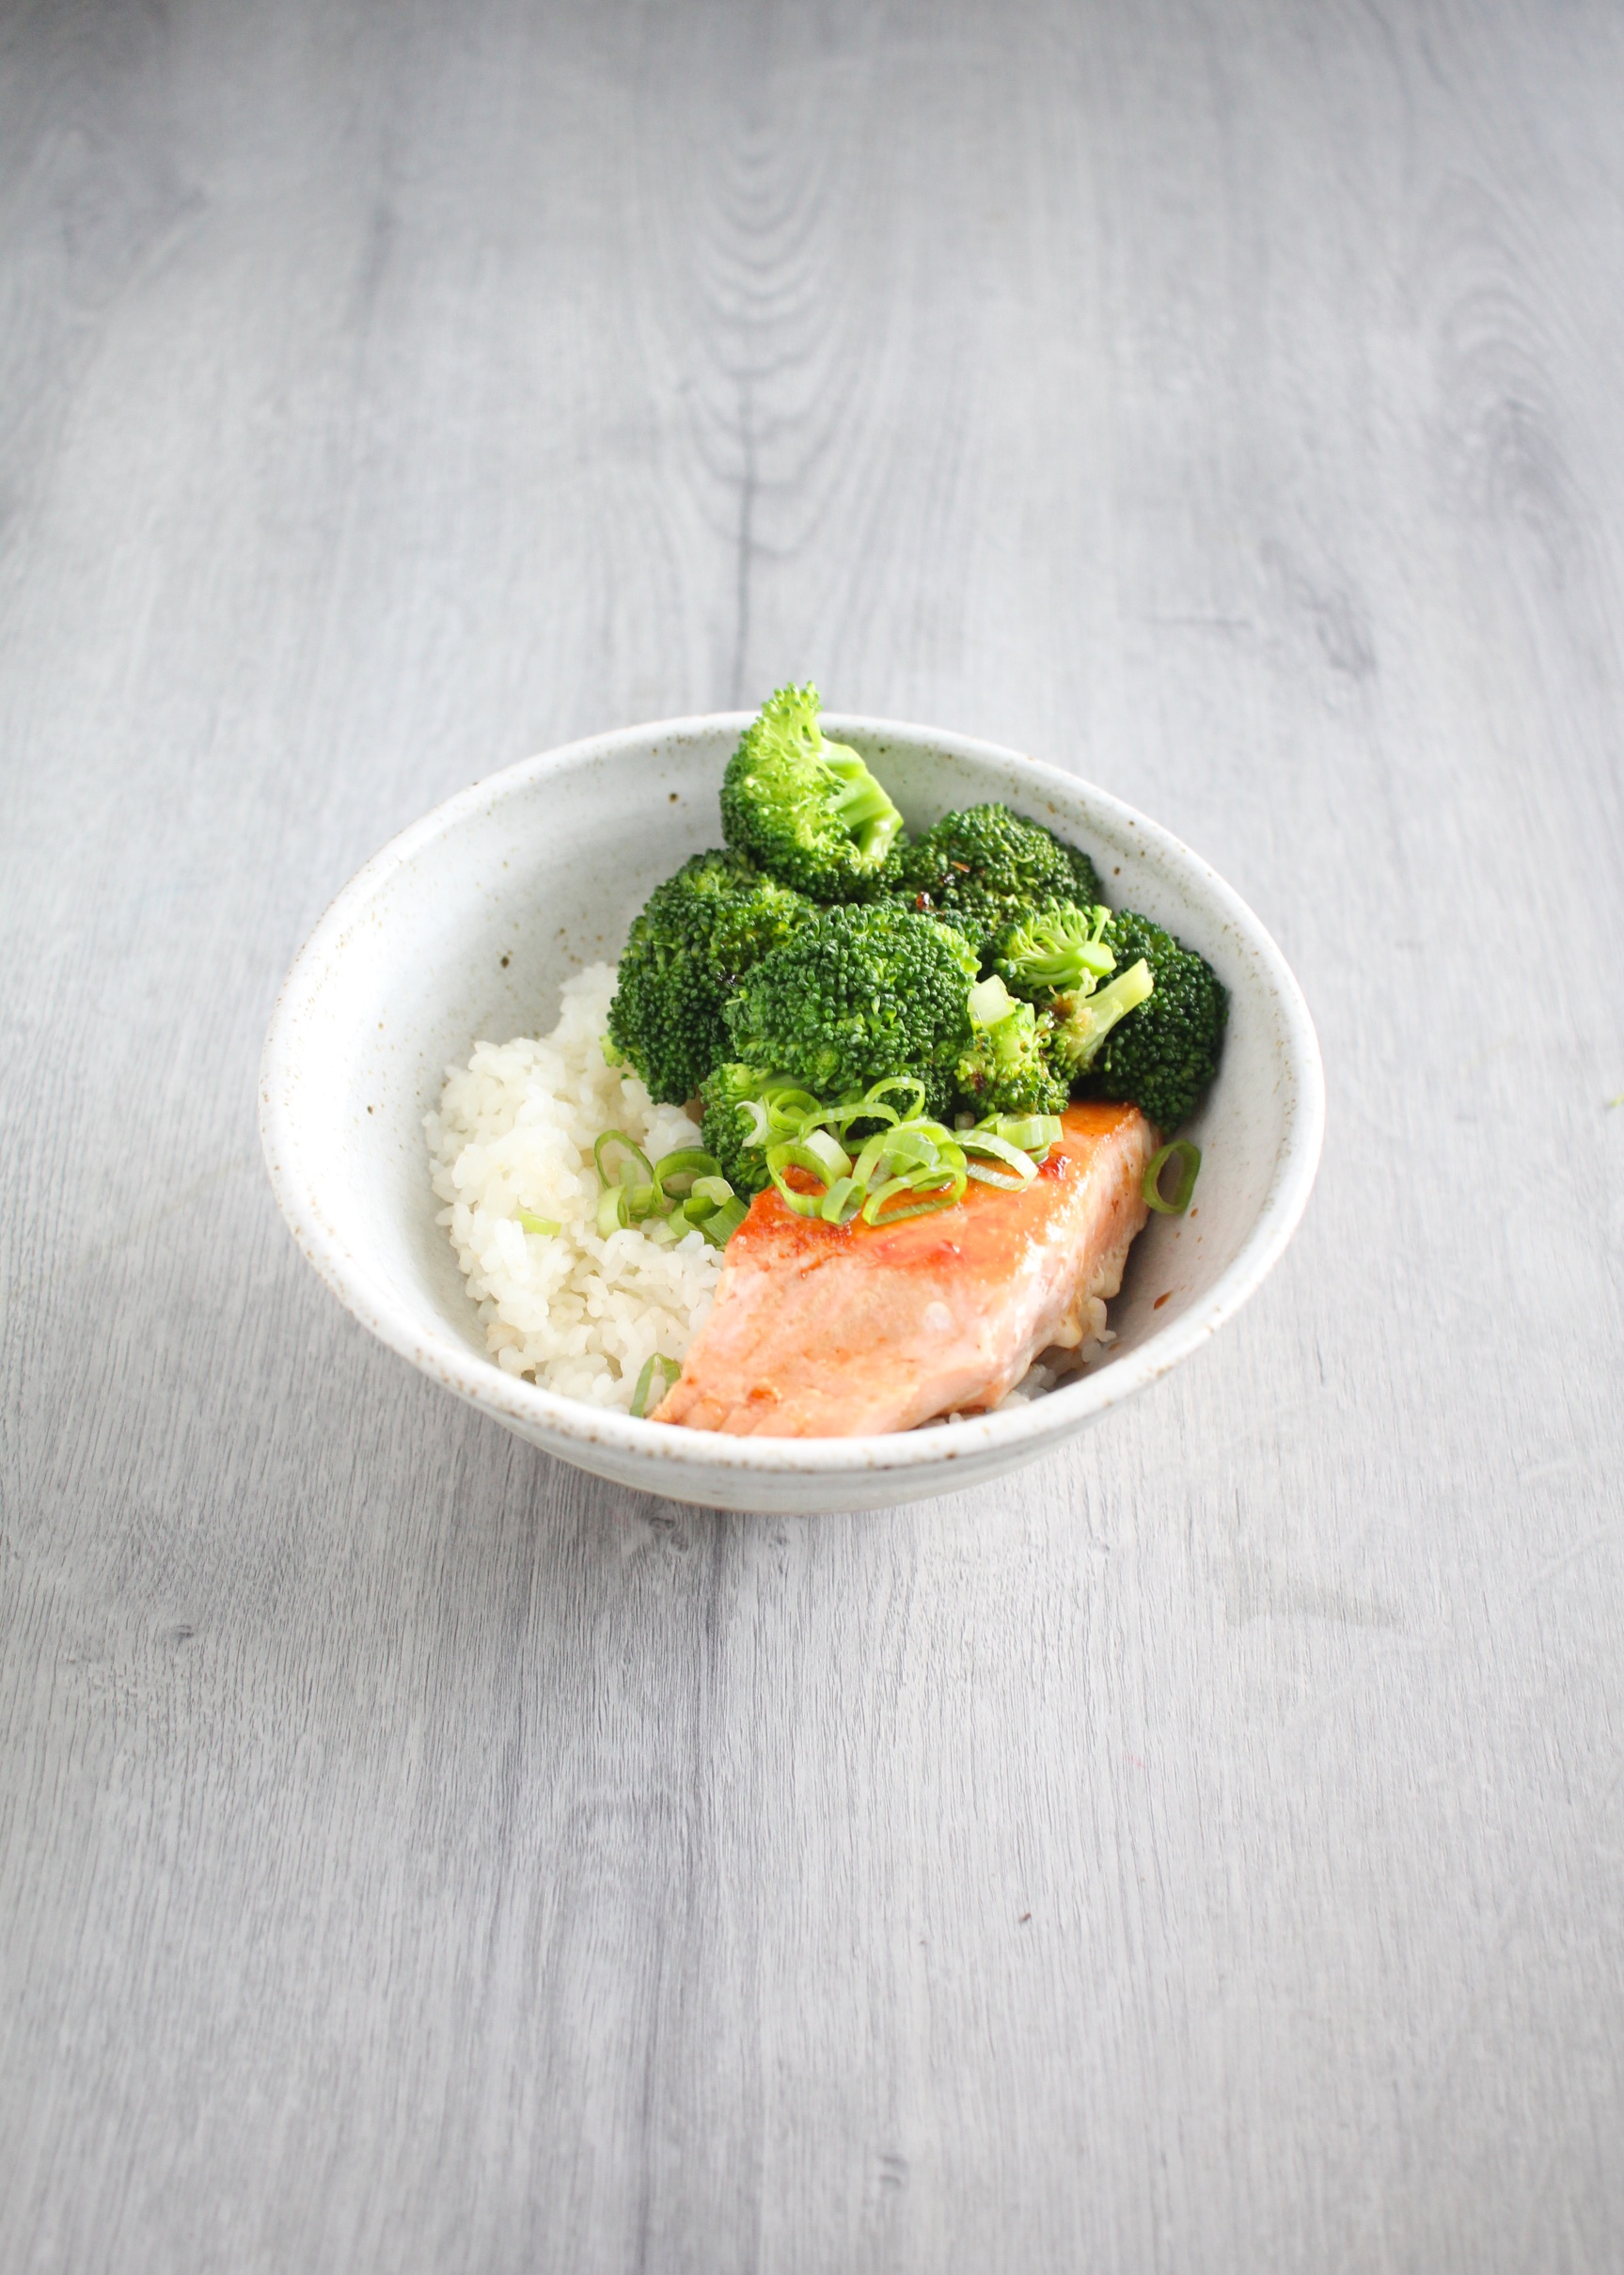 salmon & broccoli rice bowls with citrus-shoyu glaze